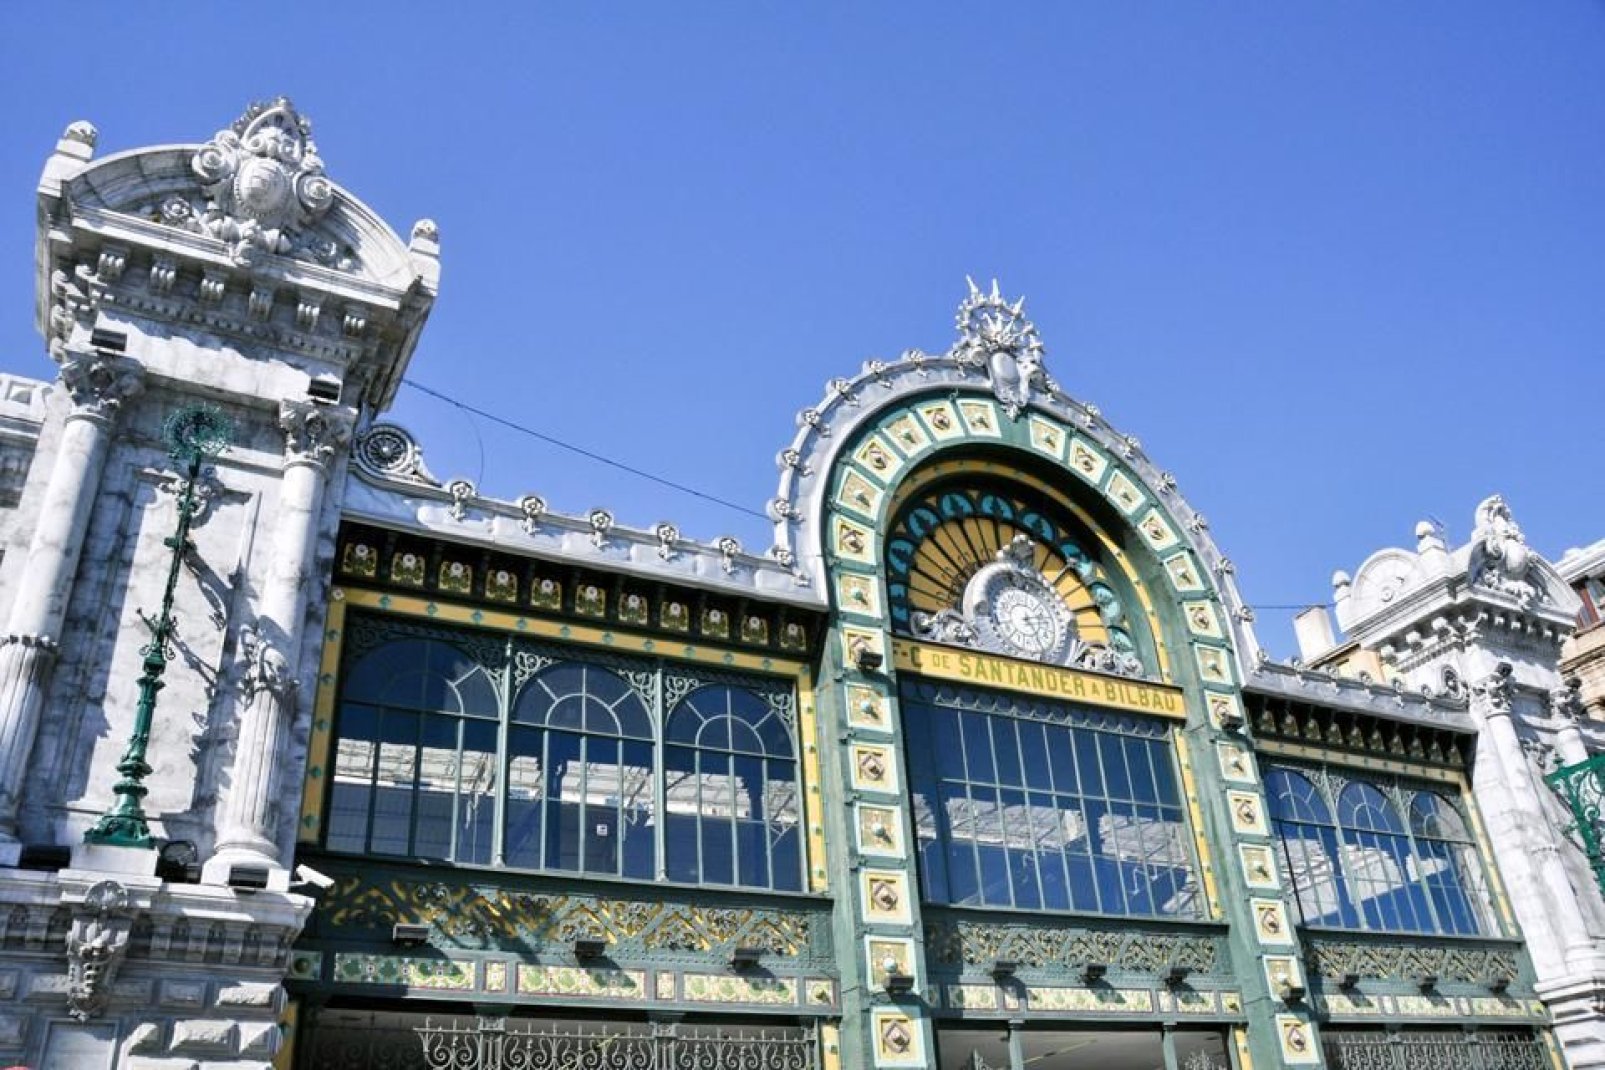 La stazione Concordia, costruita nel 1902, è una struttura particolare in stile Art Nouveau. Fa parte del patrimonio della "Belle Epoque" di Bilbao.